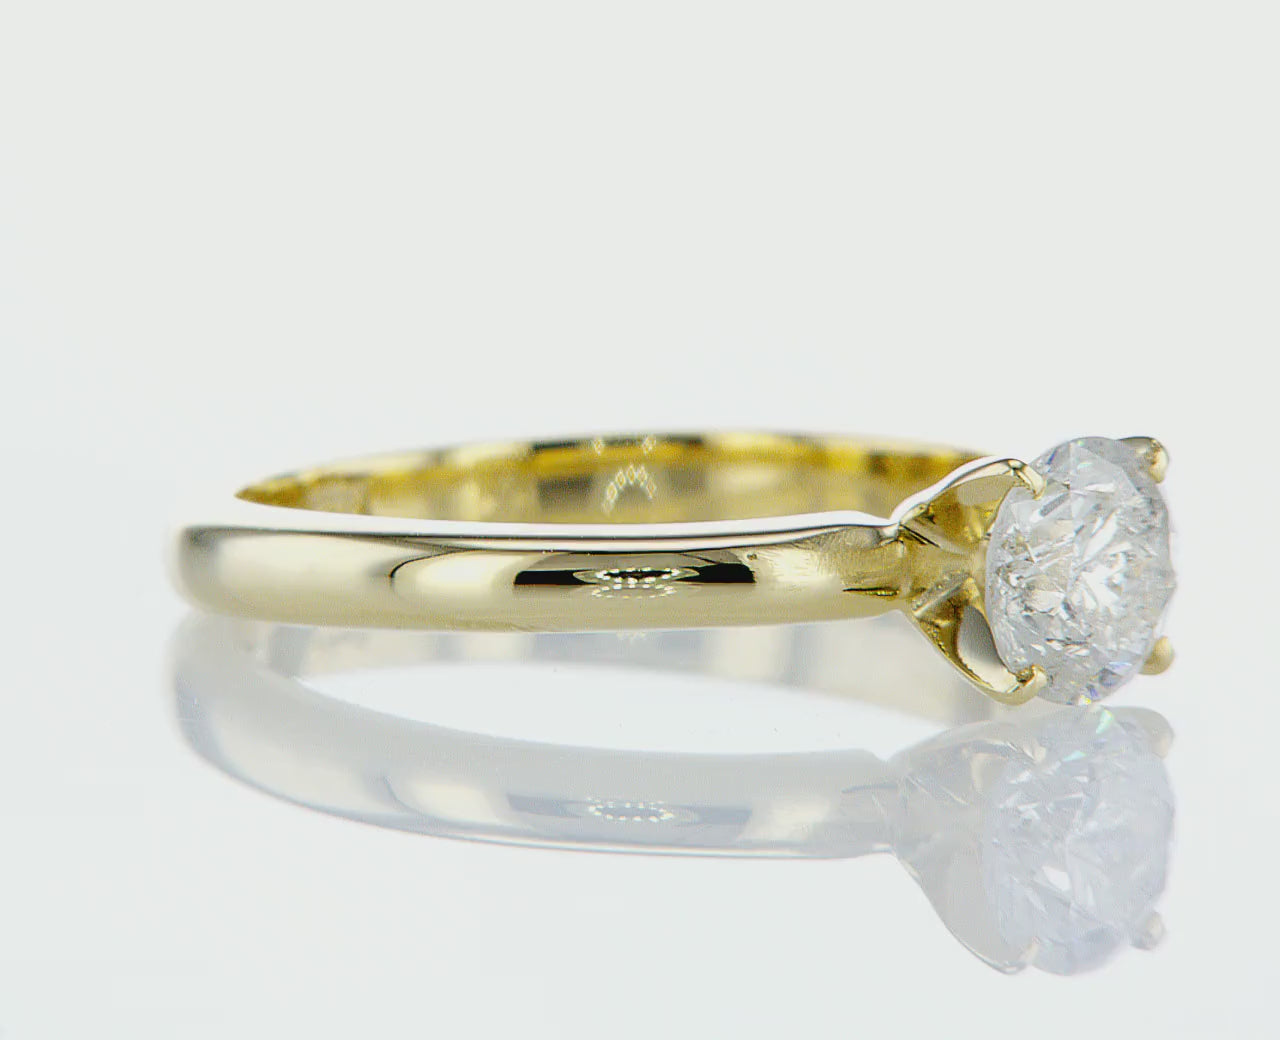 טבעת אירוסין דרור היא טבעת קלאסית משובצת ביהלום טבעי גדול במשקל 0.5 קראט, מזהב צהוב. הטבעת הזו משלבת את היוקרה והברק של טבעת יהלומים עם האלגנטיות הנצחית, ומציעה יופי ואופנה שמתאימים לאירוע של פעם בחיים.